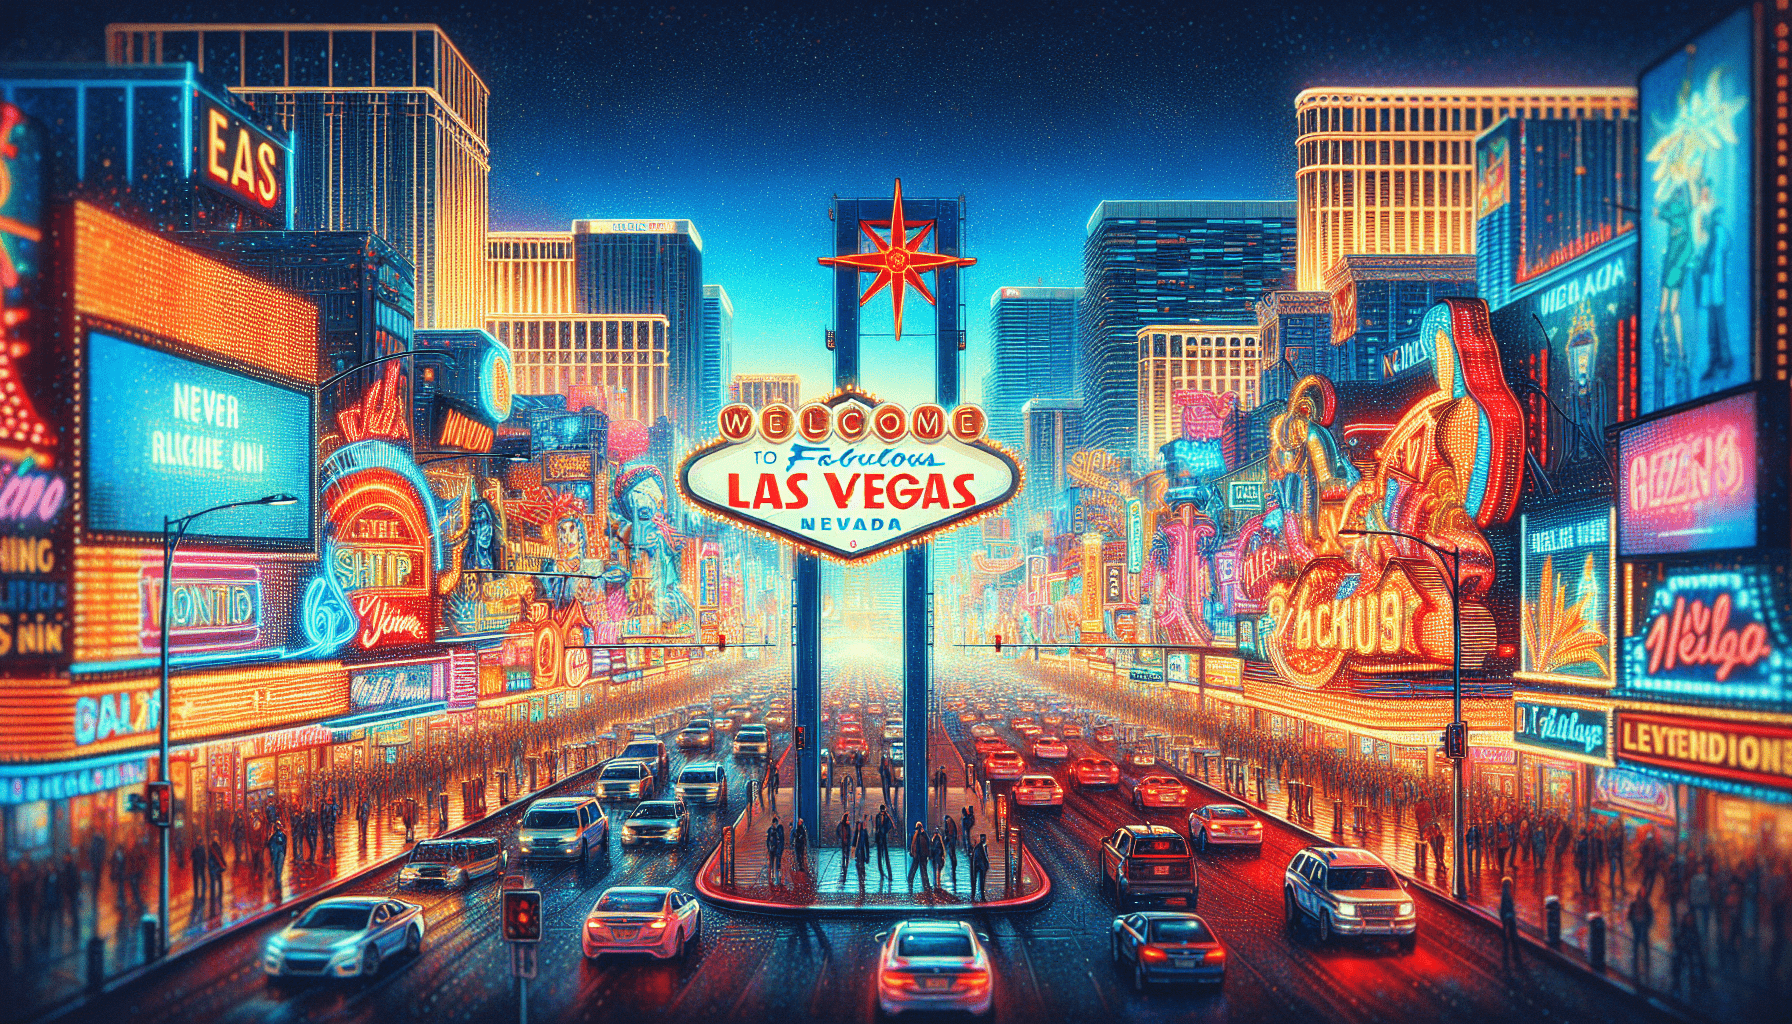 Is 2 Nights In Vegas Enough?